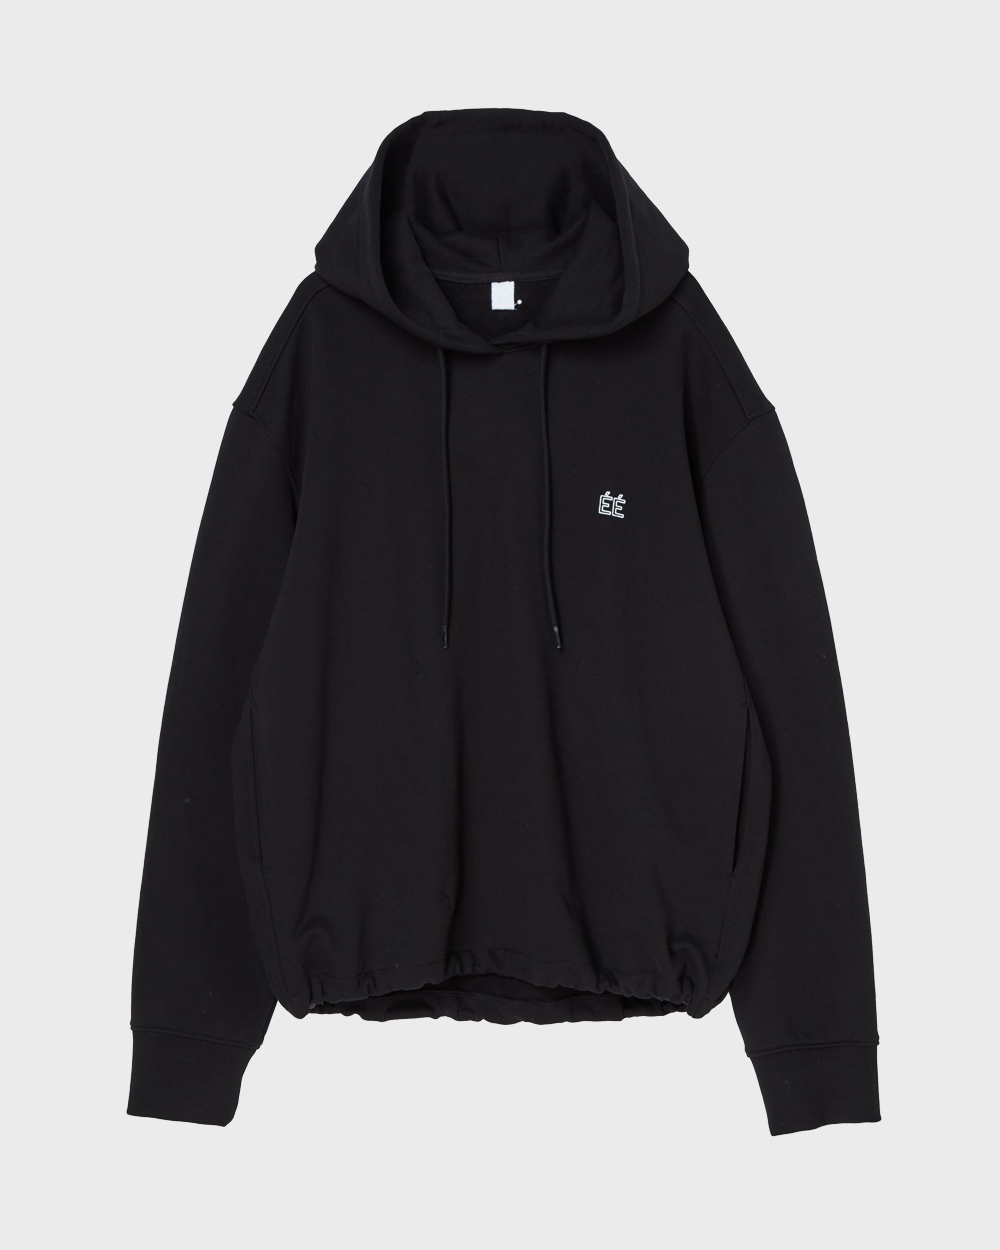 ÉÉ (Étiquette-vidÉ) Logo hooded sweatshirts (Black)